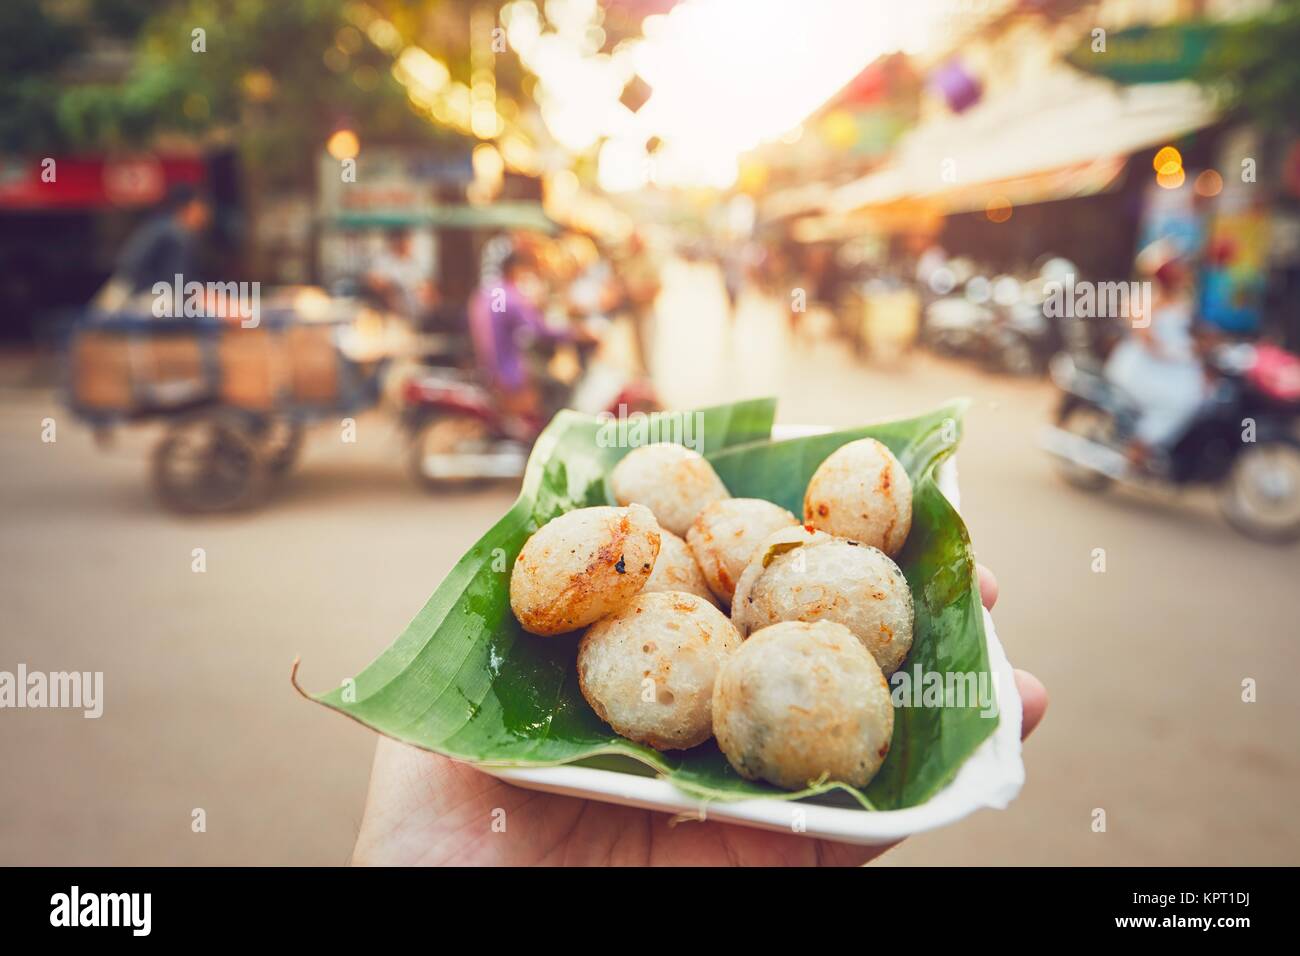 Hand of man holding coconut sucré avec de la nourriture. Rue animée pleine de restaurants, bars et boutiques - Siem Reap, Cambodge Banque D'Images